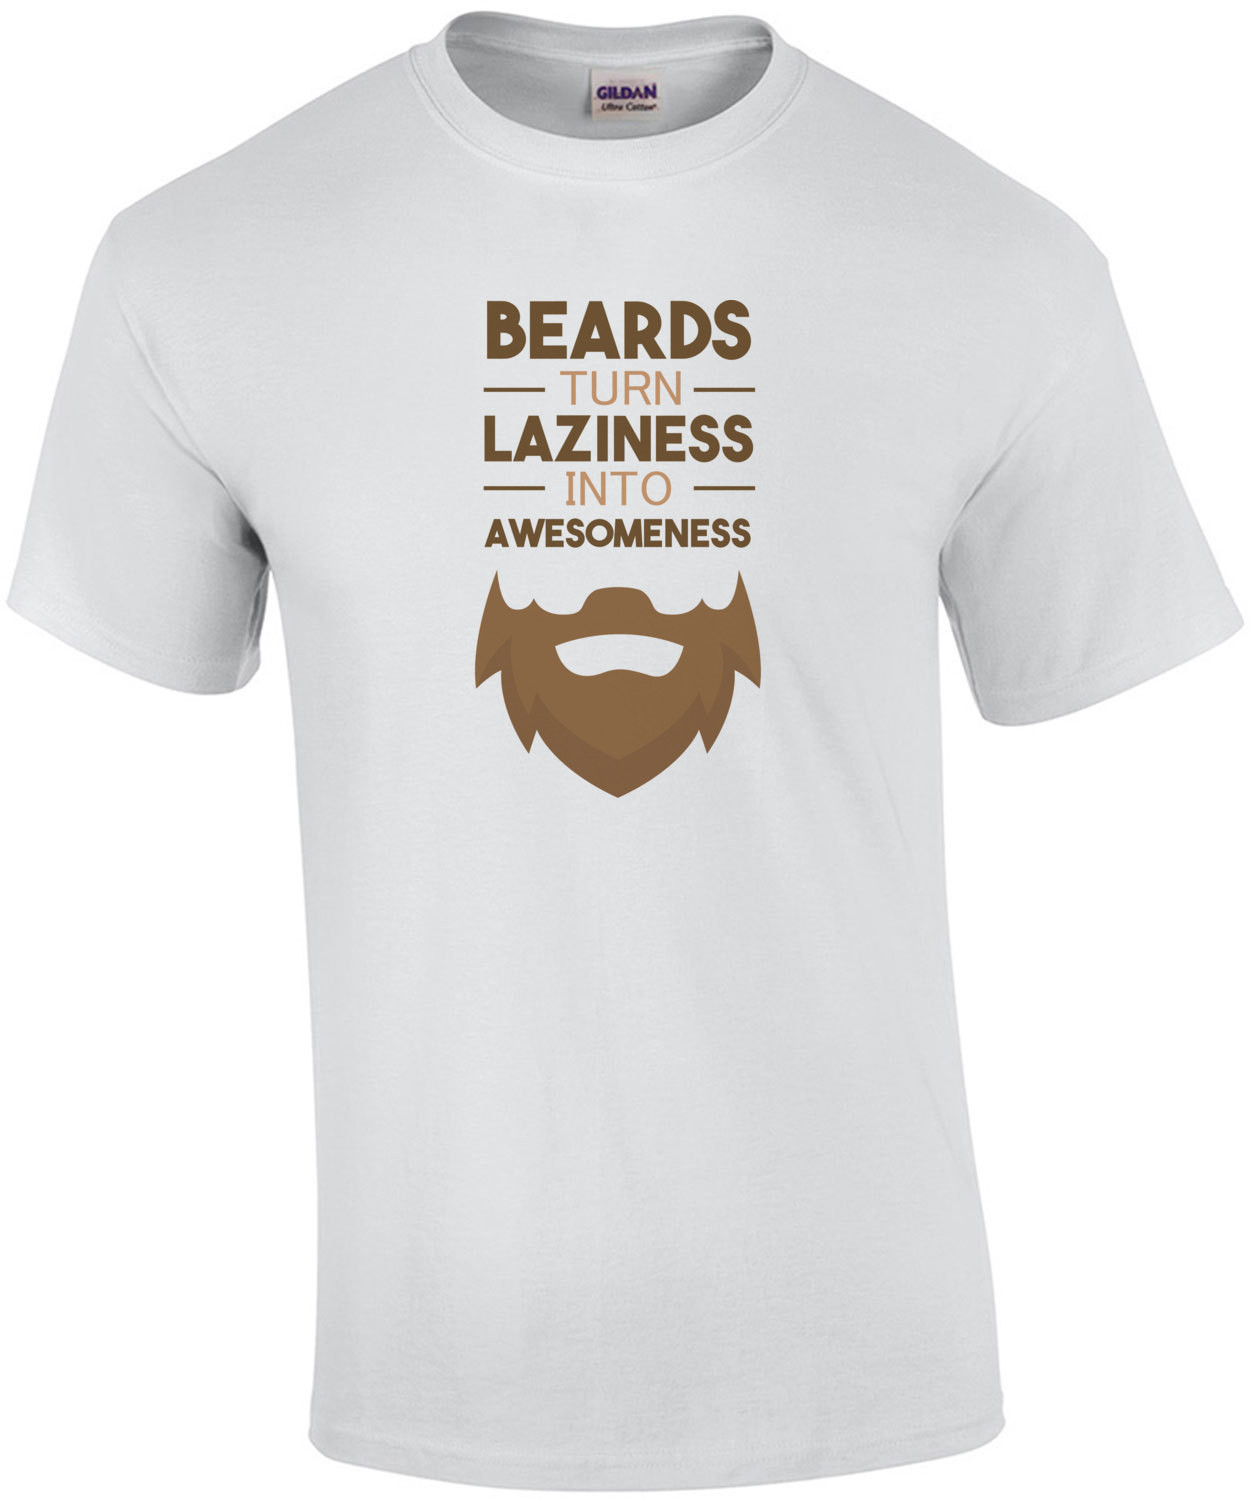 Beards turn laziness into awesomeness - funny beard t-shirt